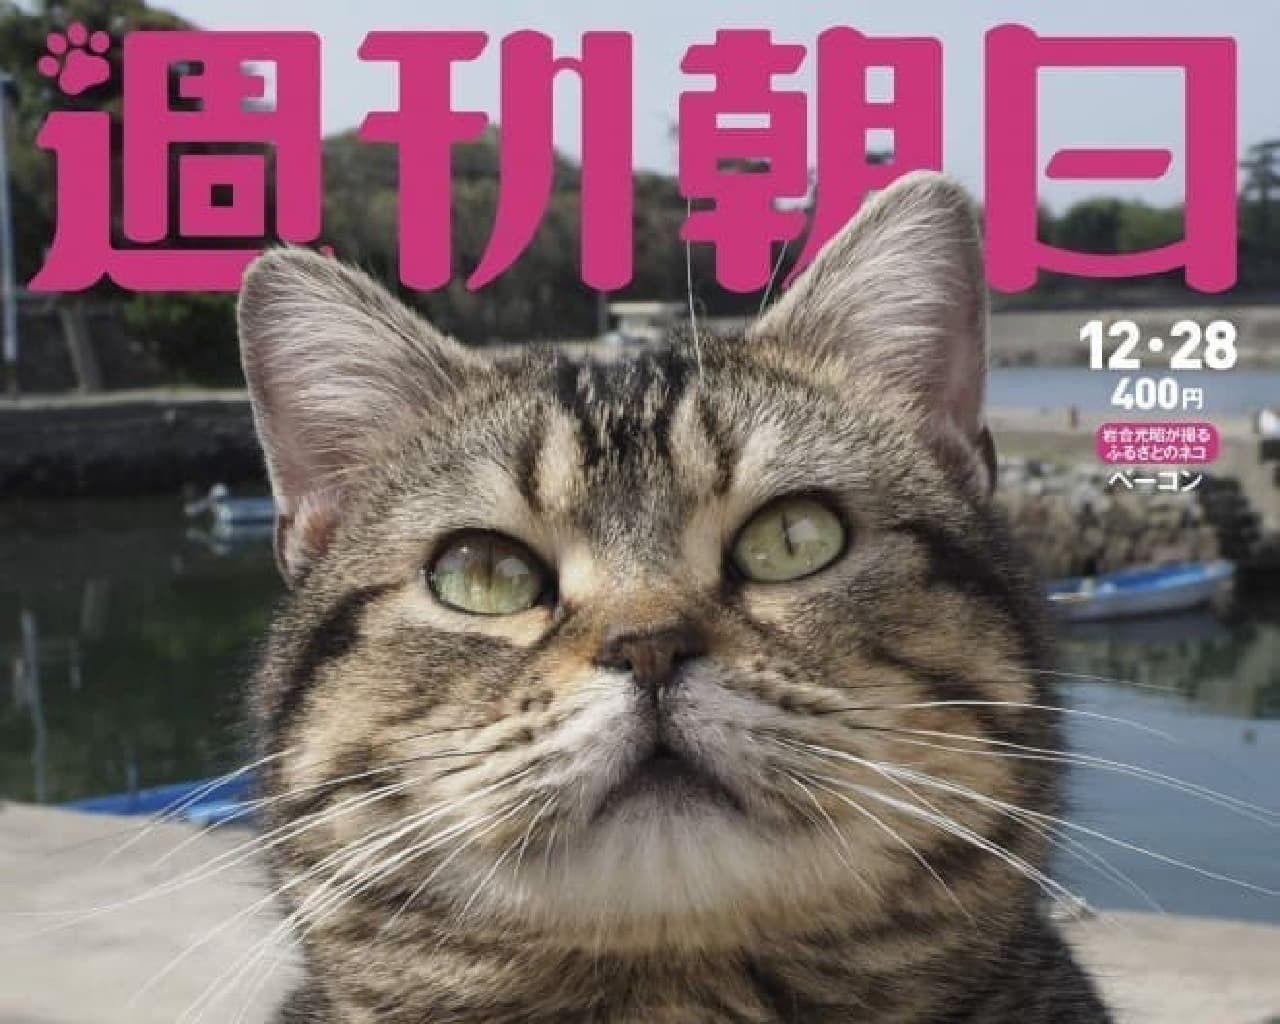 岩合光昭さん撮影のカレンダー「子ネコの冒険」付きのネコ特集号、12月18日発売